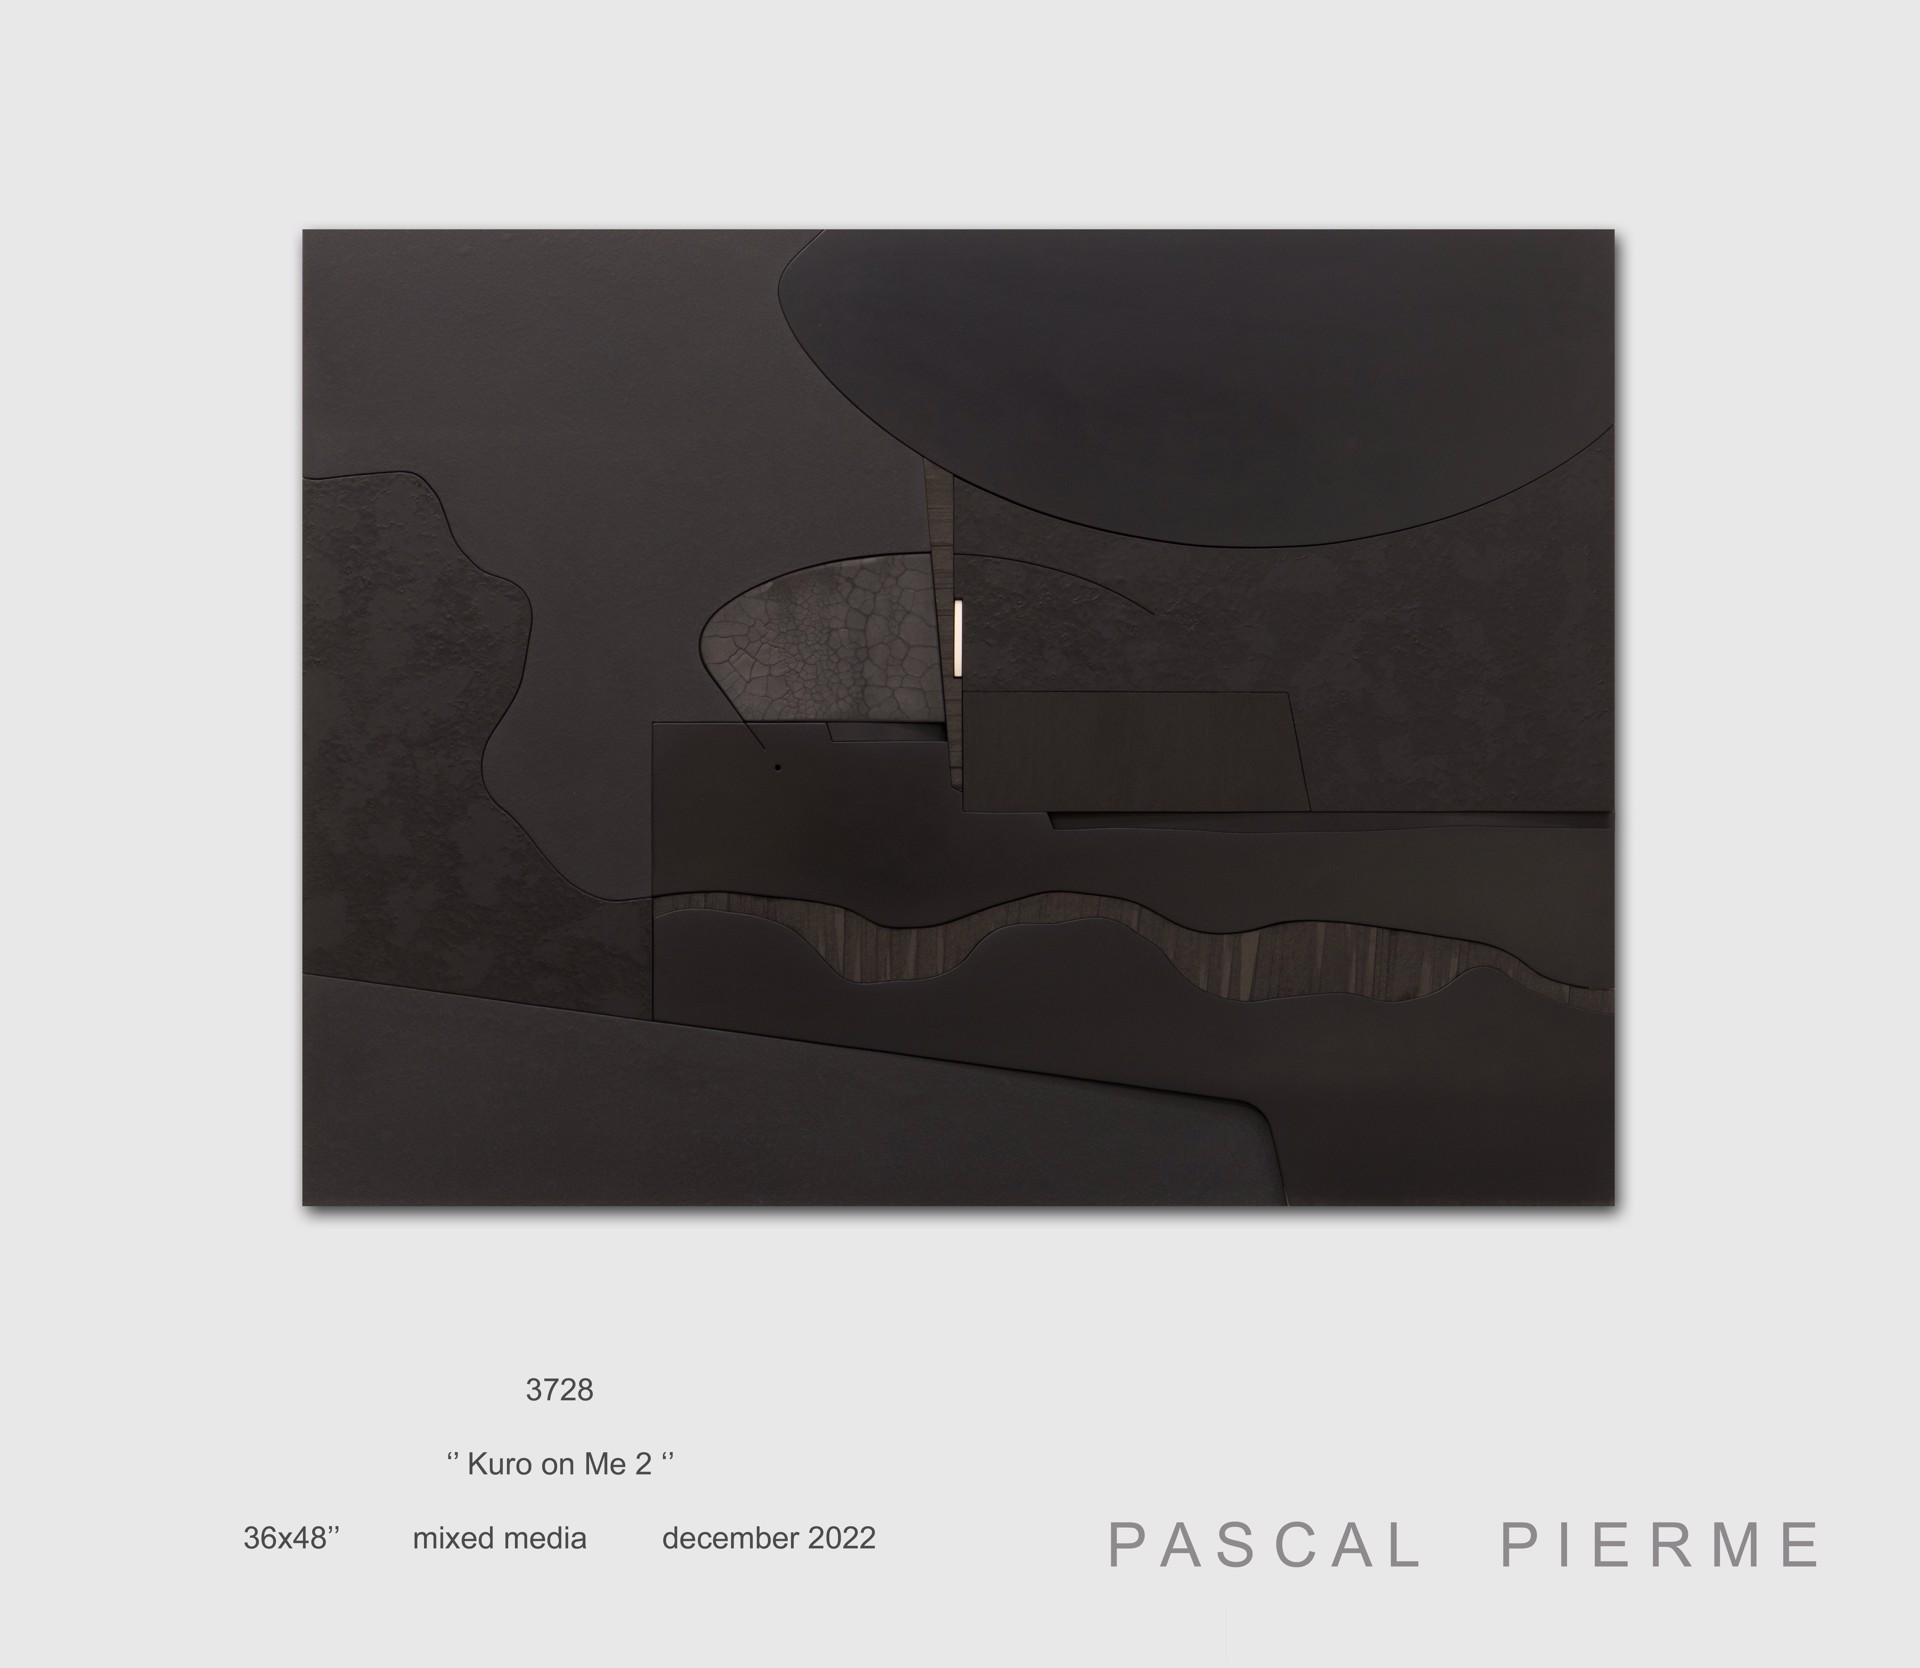 Kuro on Me 2 by Pascal Piermé